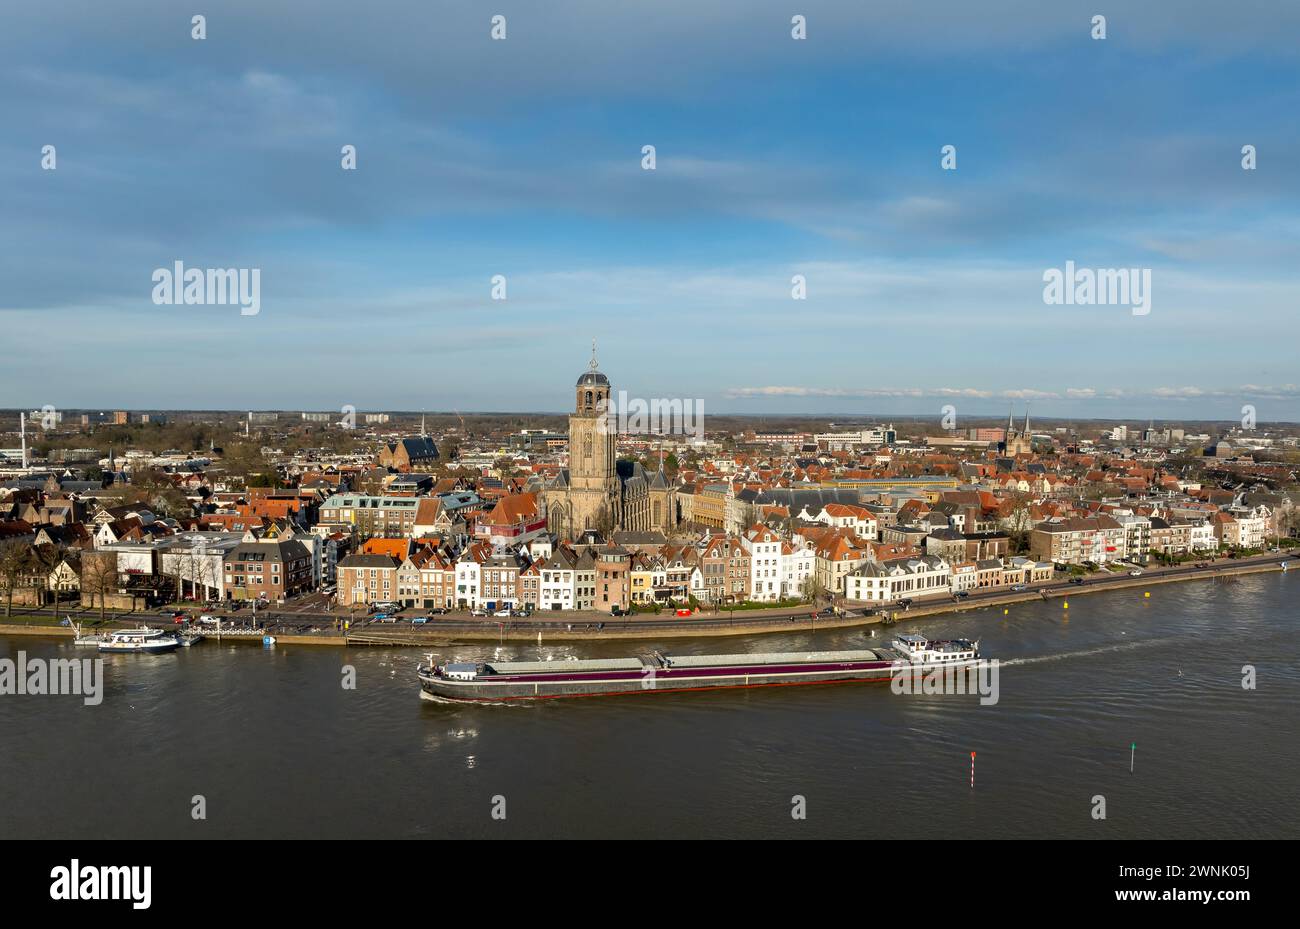 Vue panoramique aérienne de la ville néerlandaise de Deventer, le long de la rivière IJssel. Banque D'Images